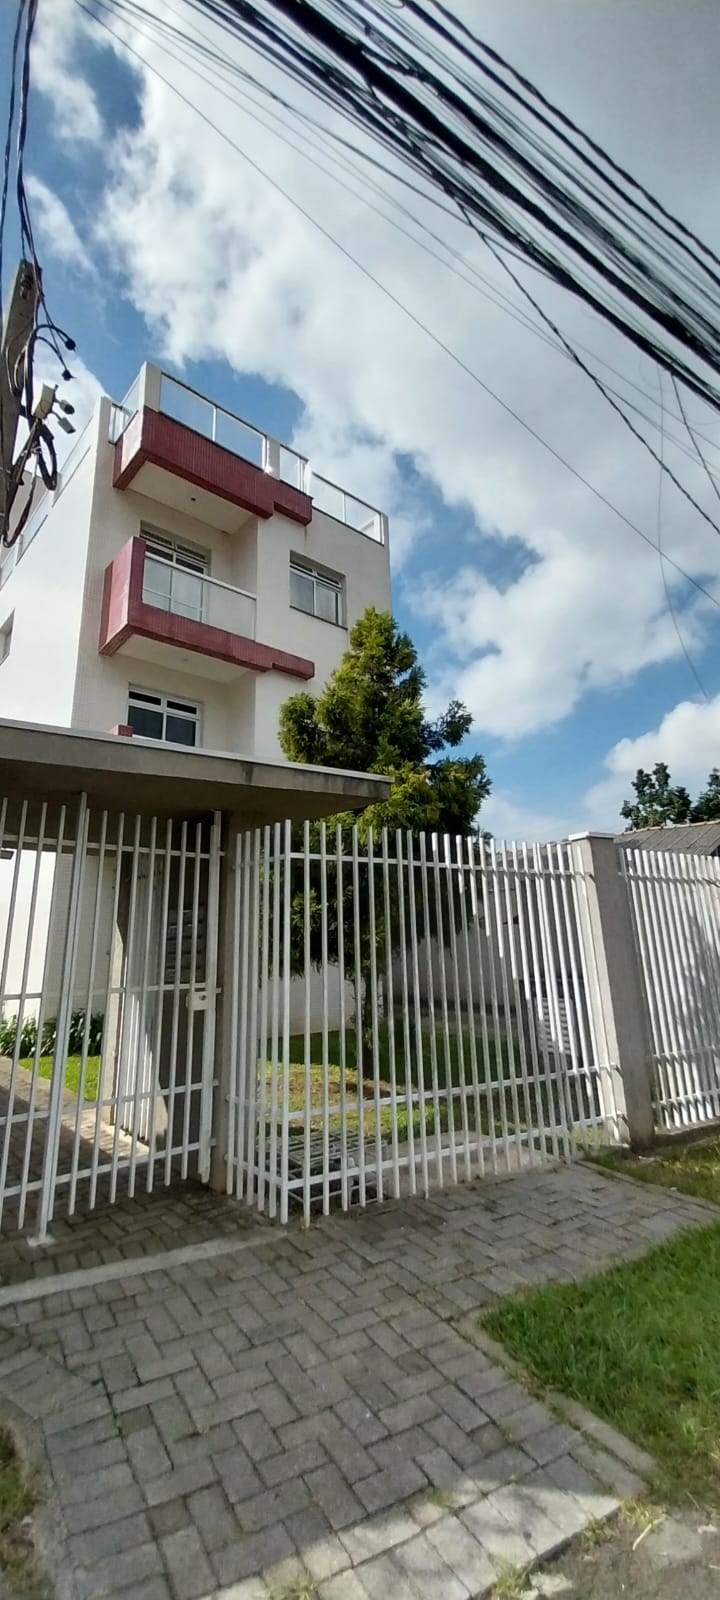 Apartamento para alugar possuí 49,64 M² 01 dormitório no Prado Velho, Curitiba/PR